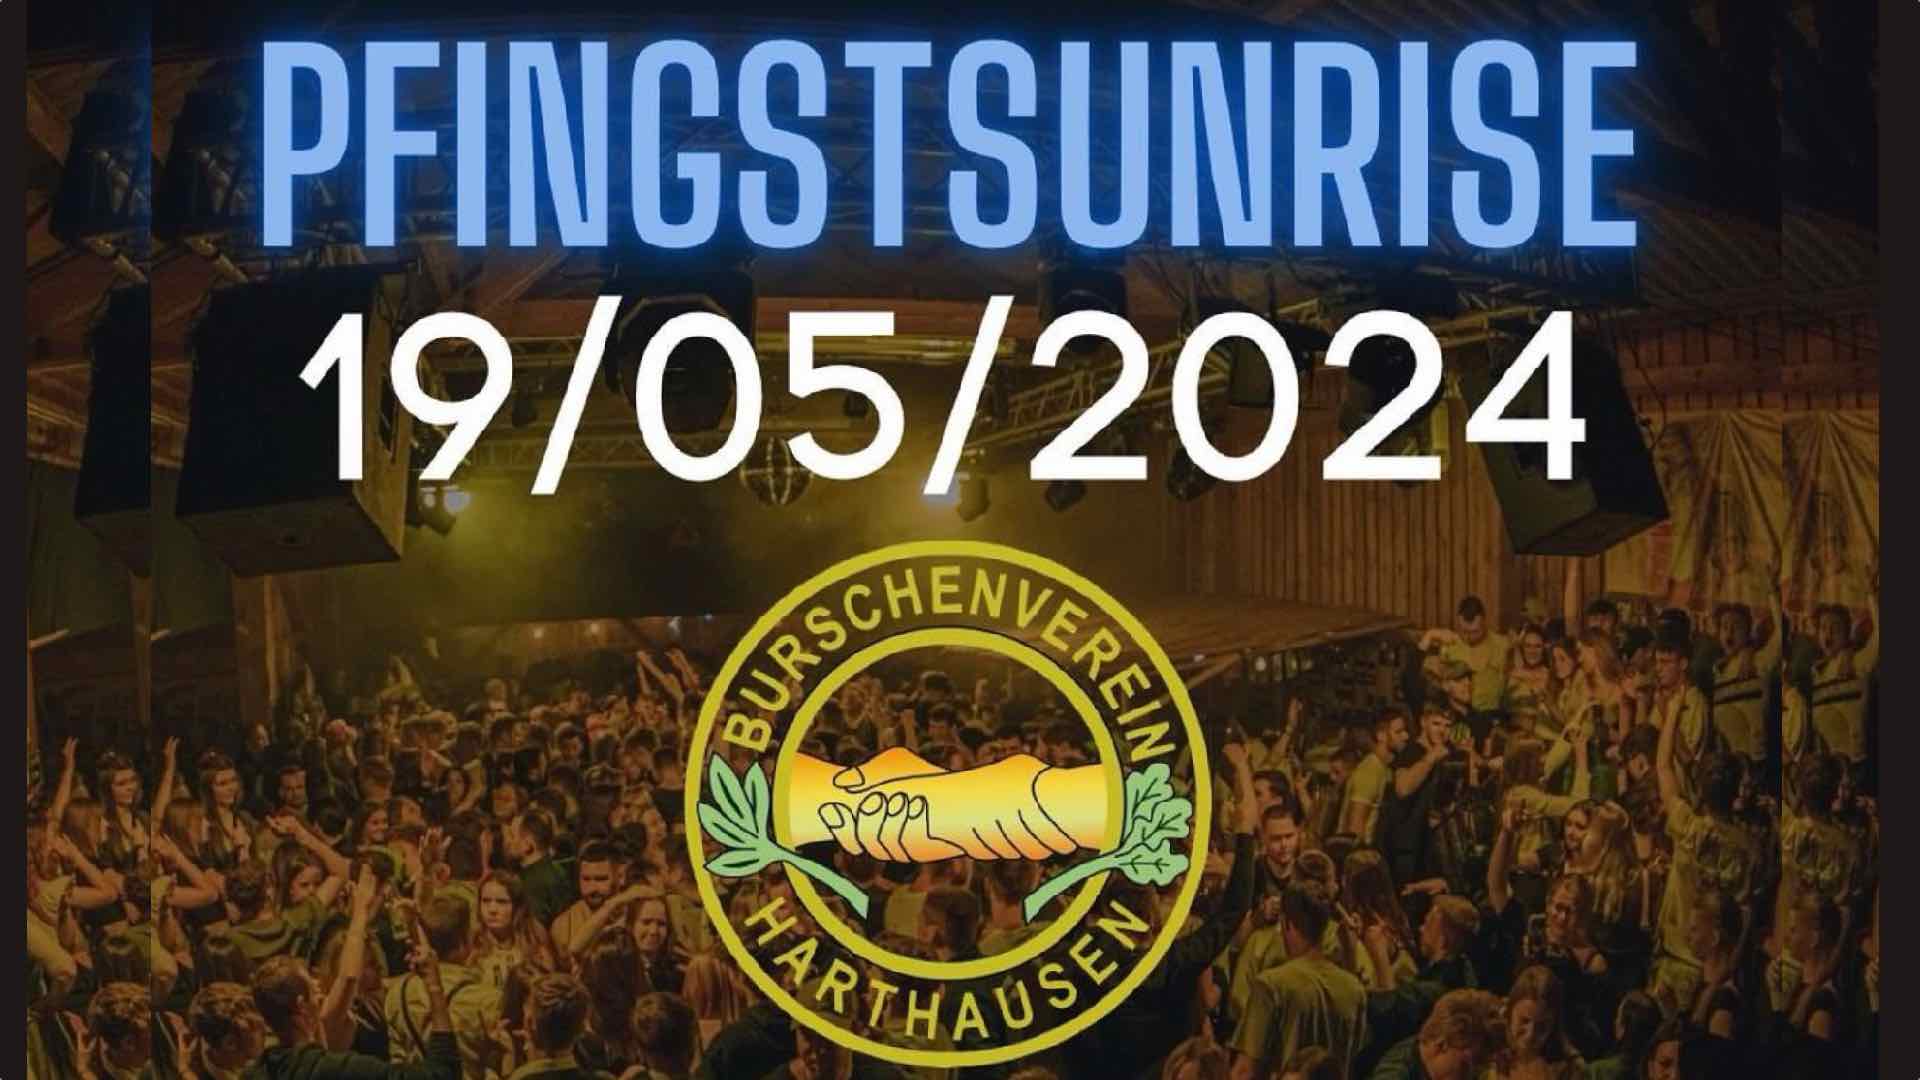 PfingstSunrise-Party 2024 in Harthausen